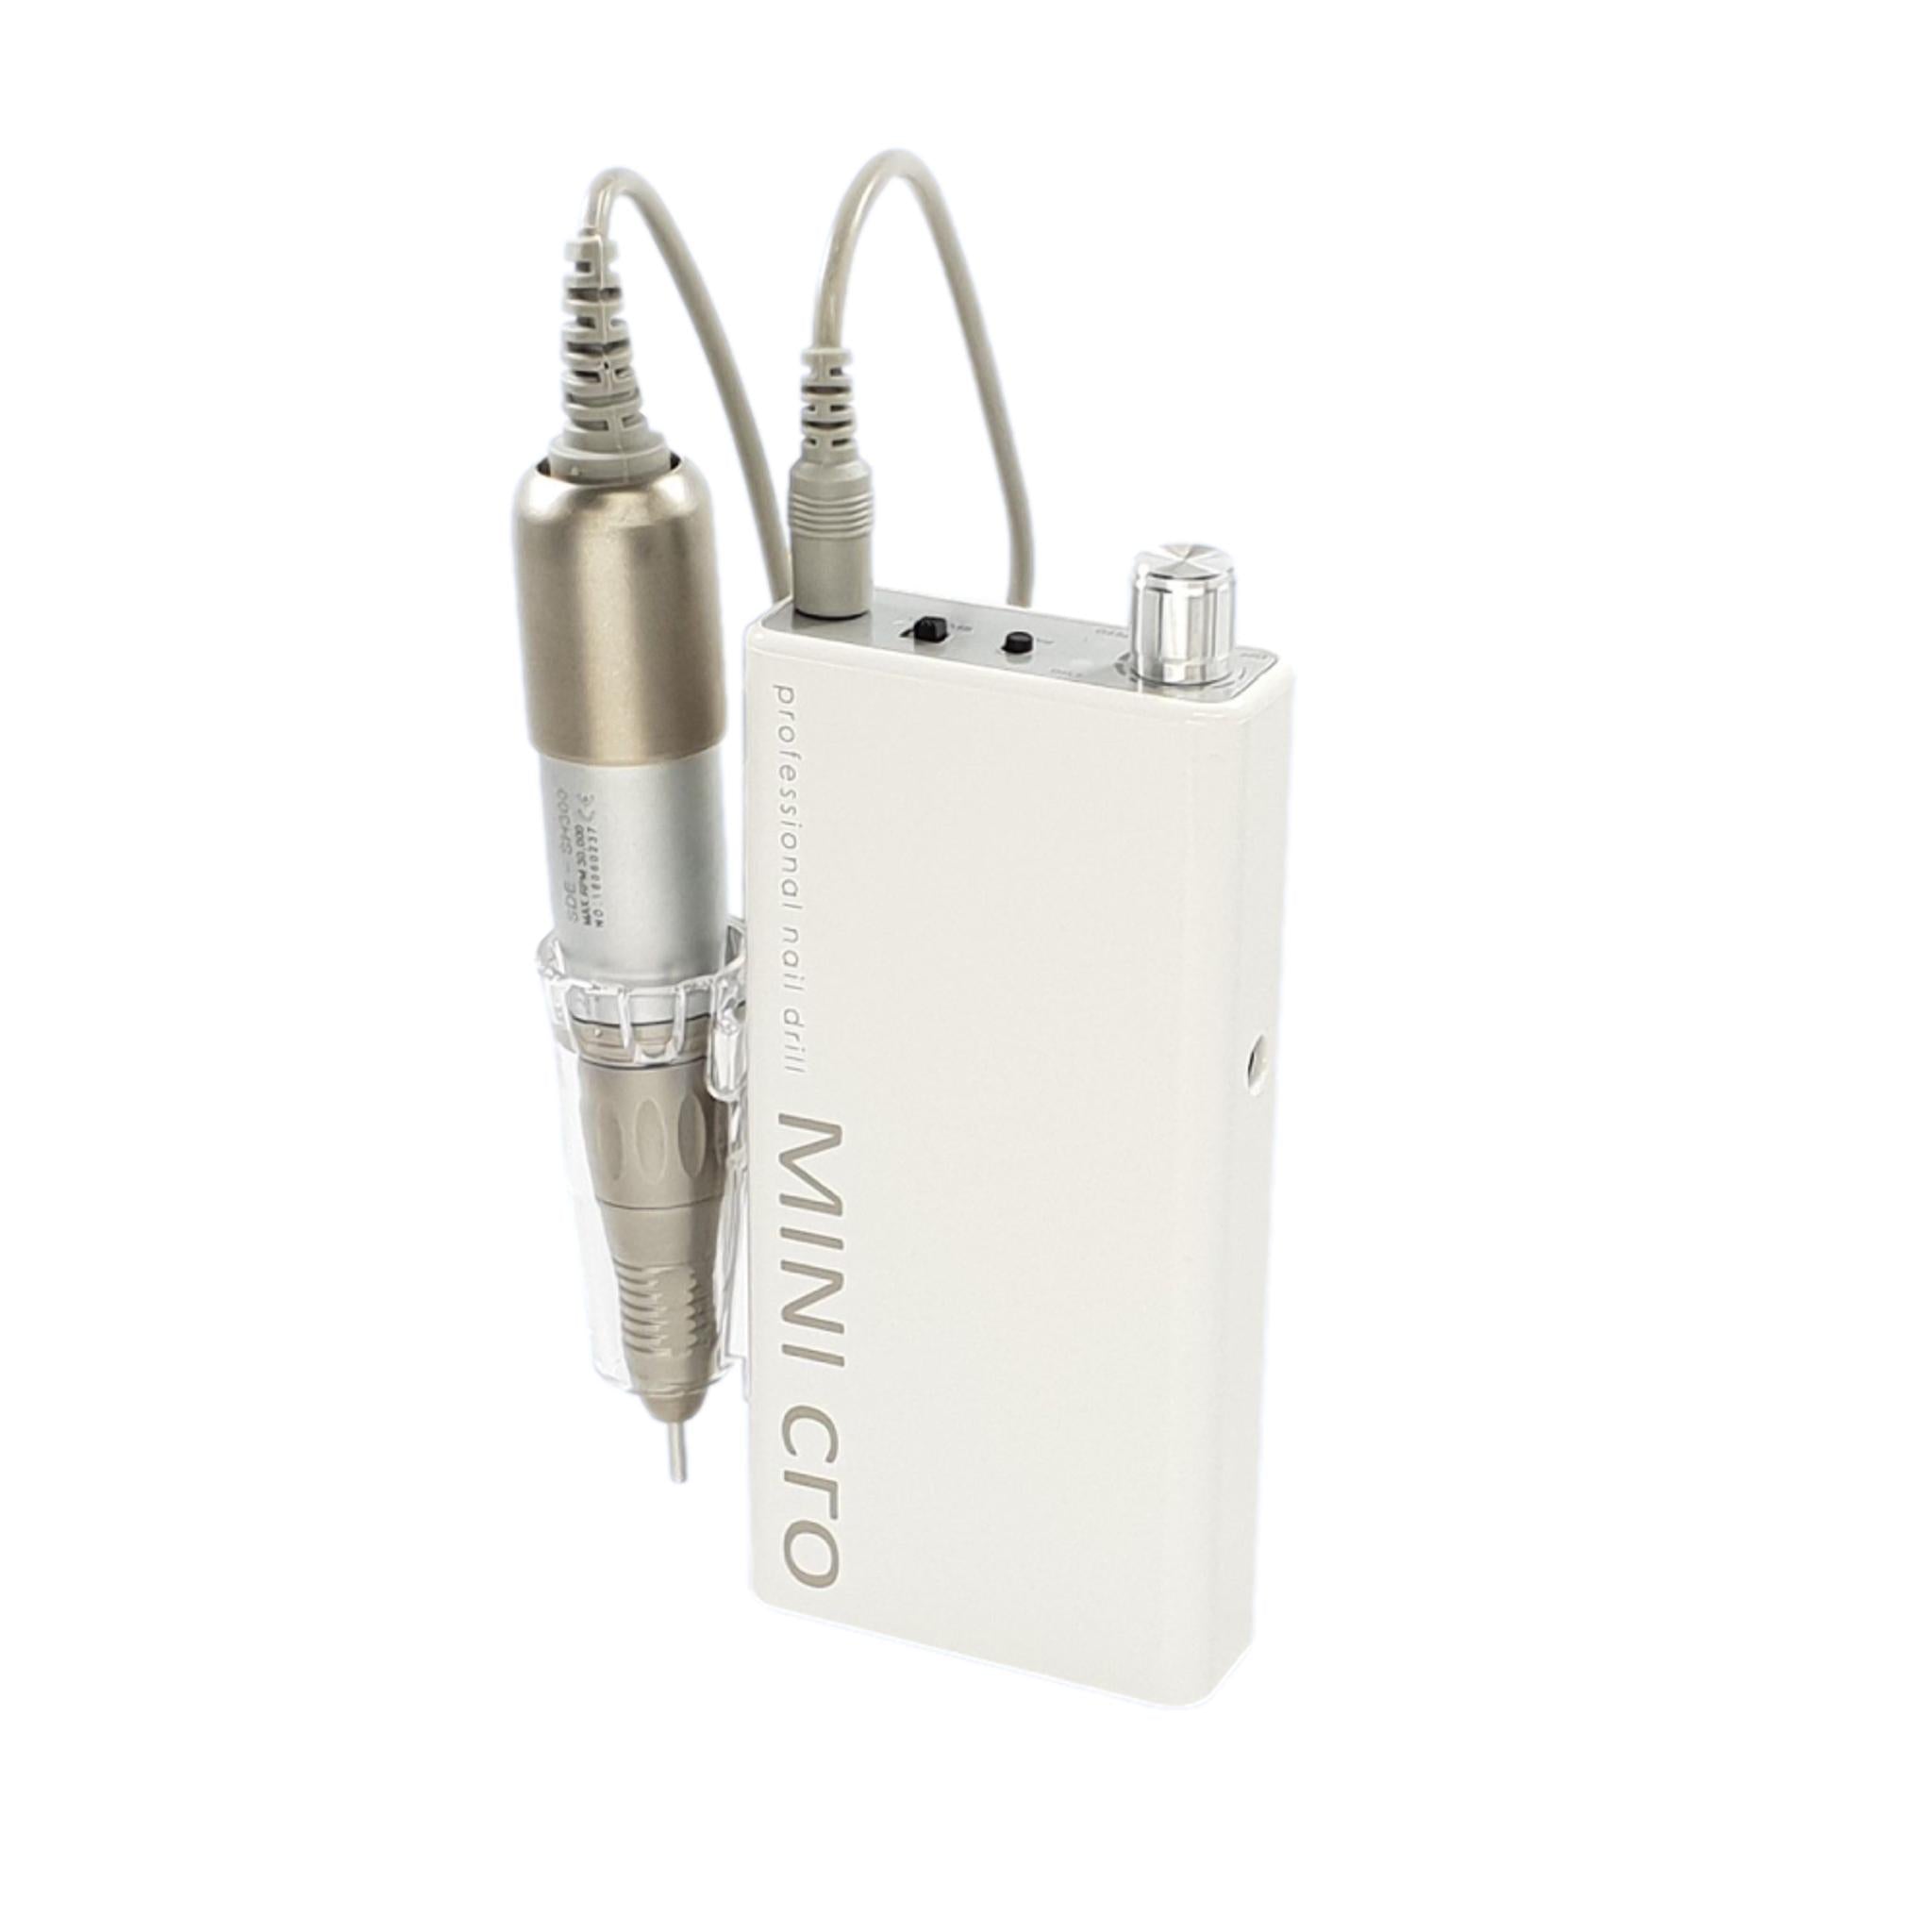 Mini-cro - Micromoteur portable - Blanc - 30 000 tr/min - Avec pièce à main démontable